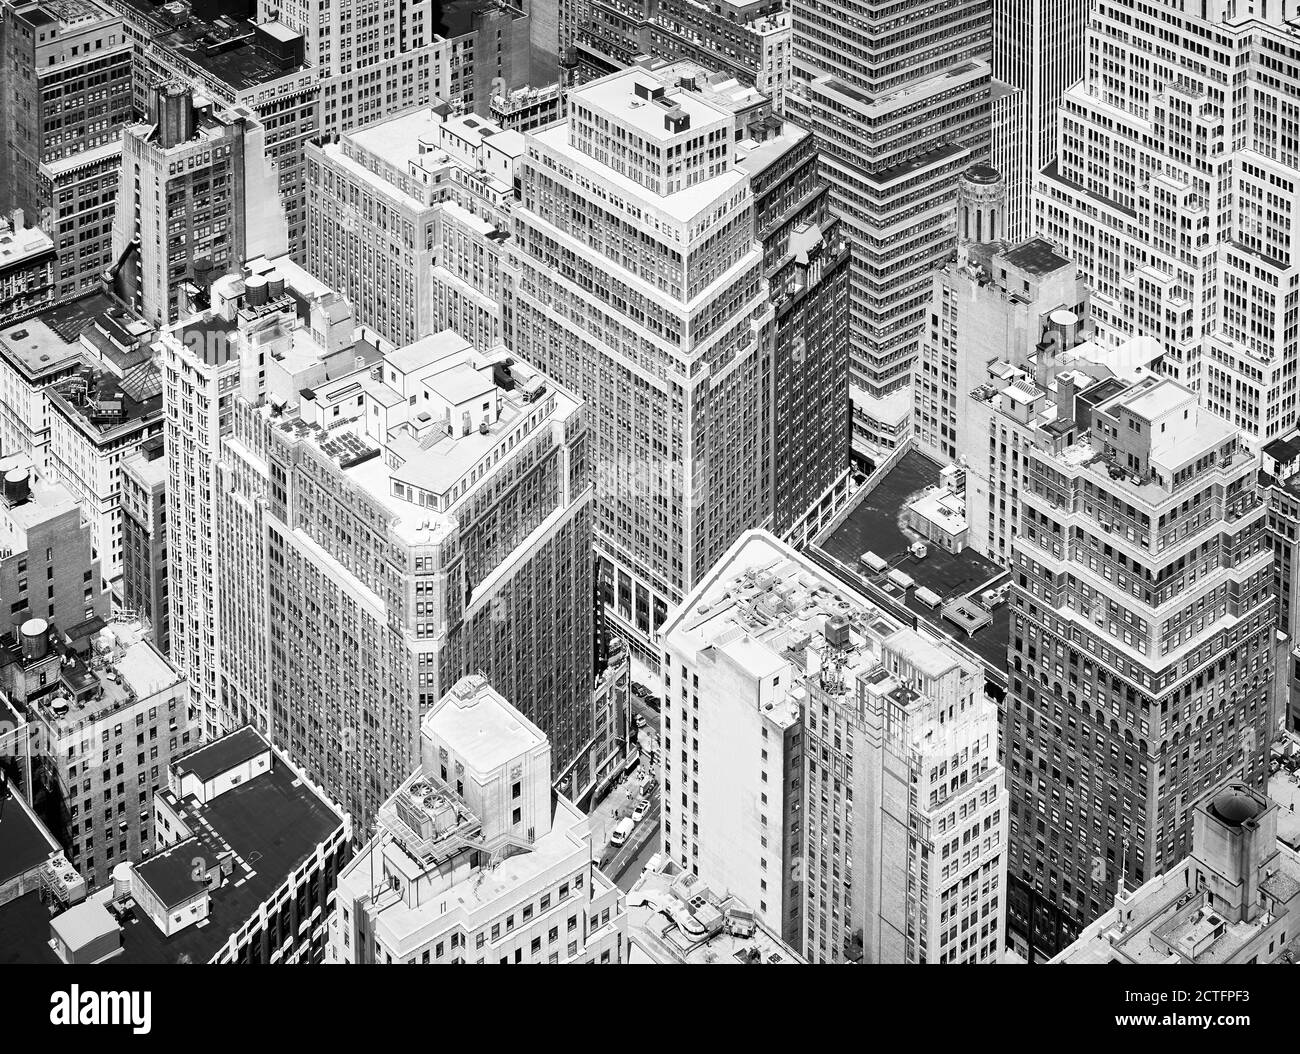 Vista aerea in bianco e nero della variegata architettura di New York City, Stati Uniti. Foto Stock